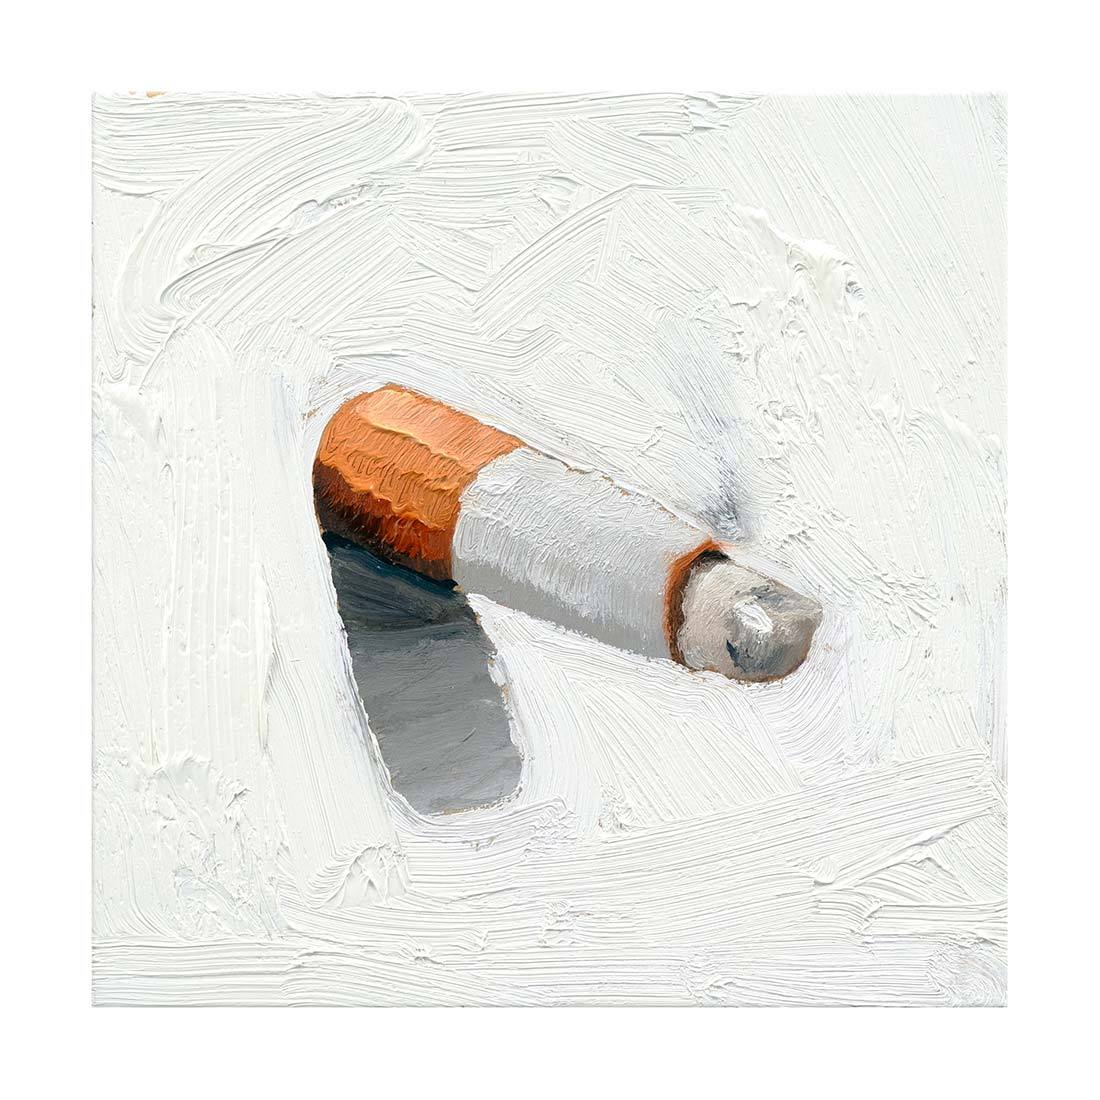 Cigarette Study No. 8